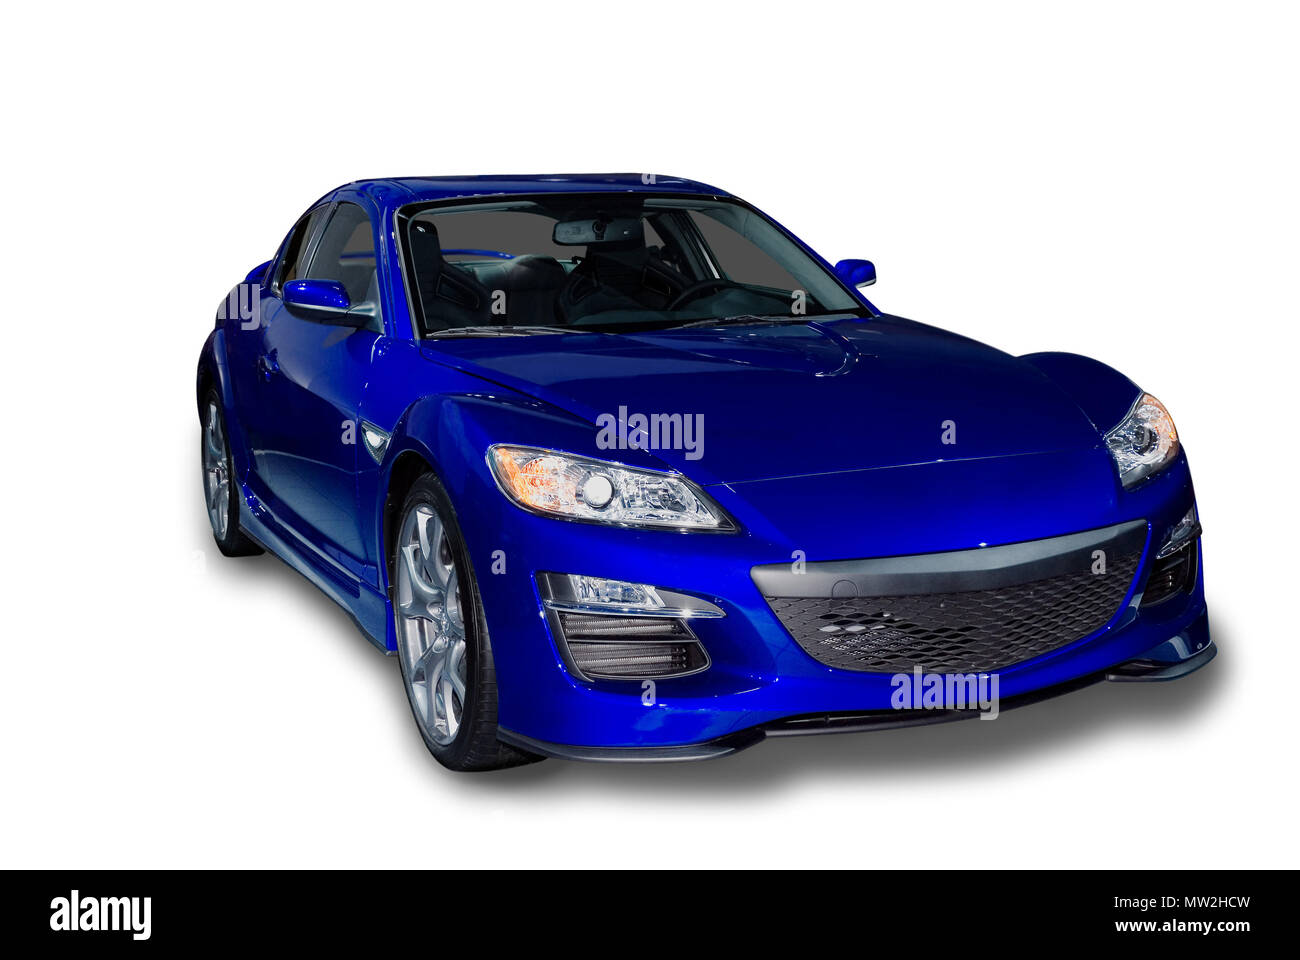 Auto sportiva blu immagini e fotografie stock ad alta risoluzione - Alamy